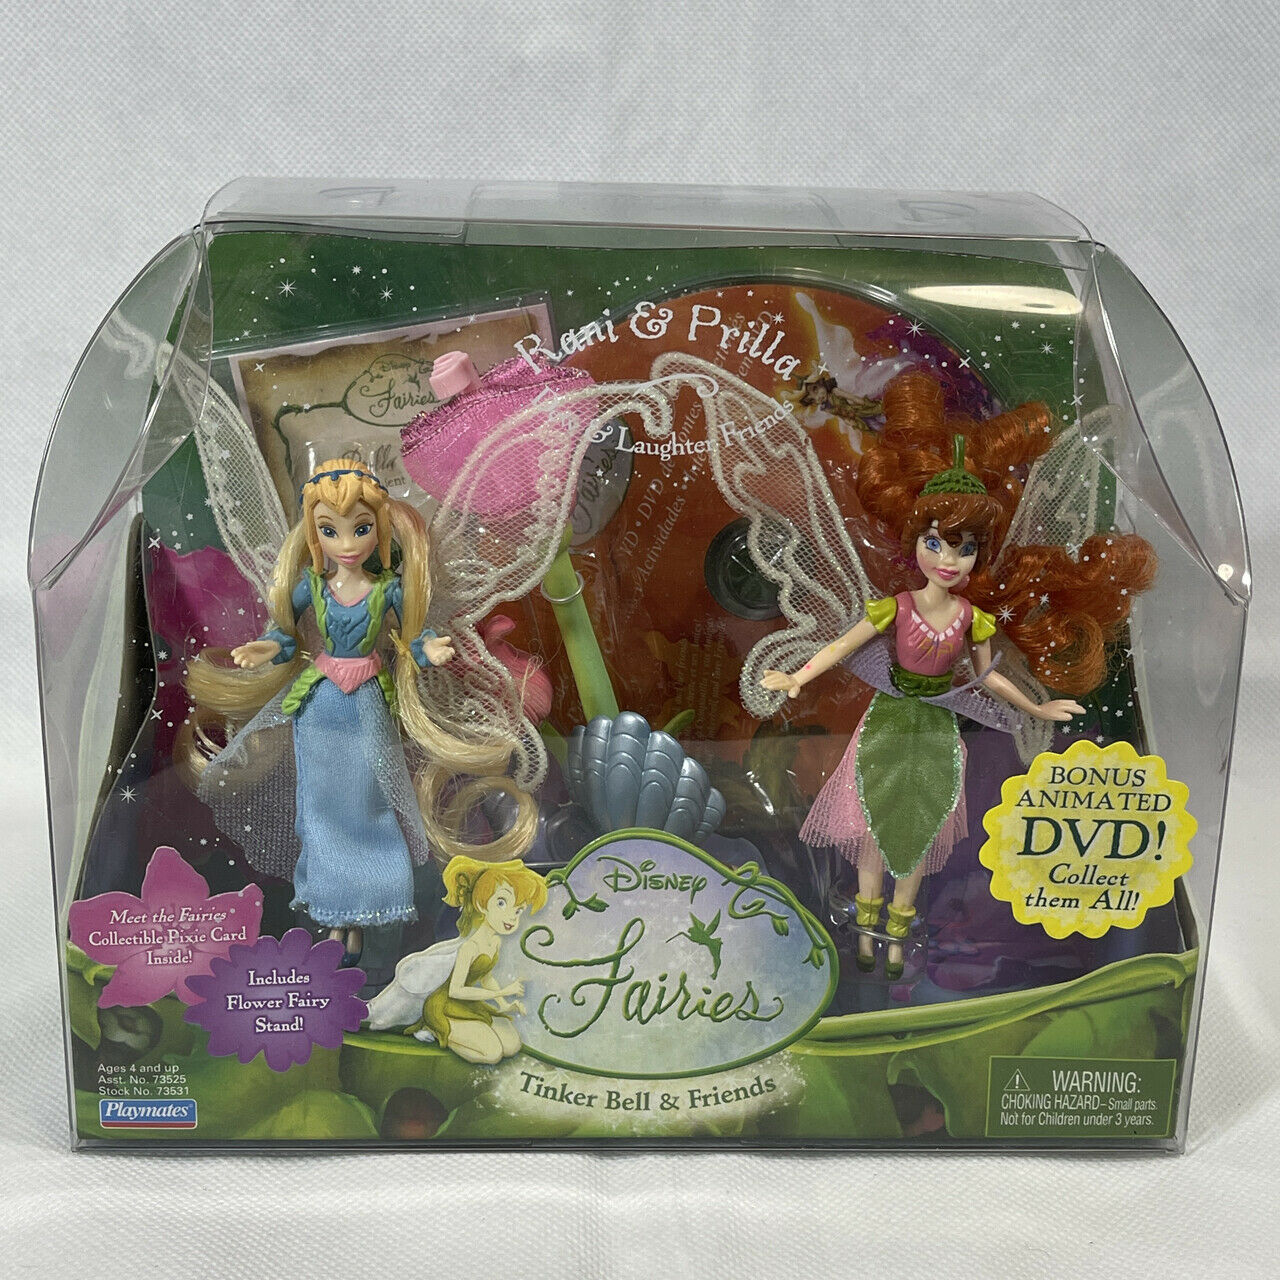 Disney Fairies Tinker Bell & Friends Rani Prilla Dew Laughter Dolls W/ Dvd New